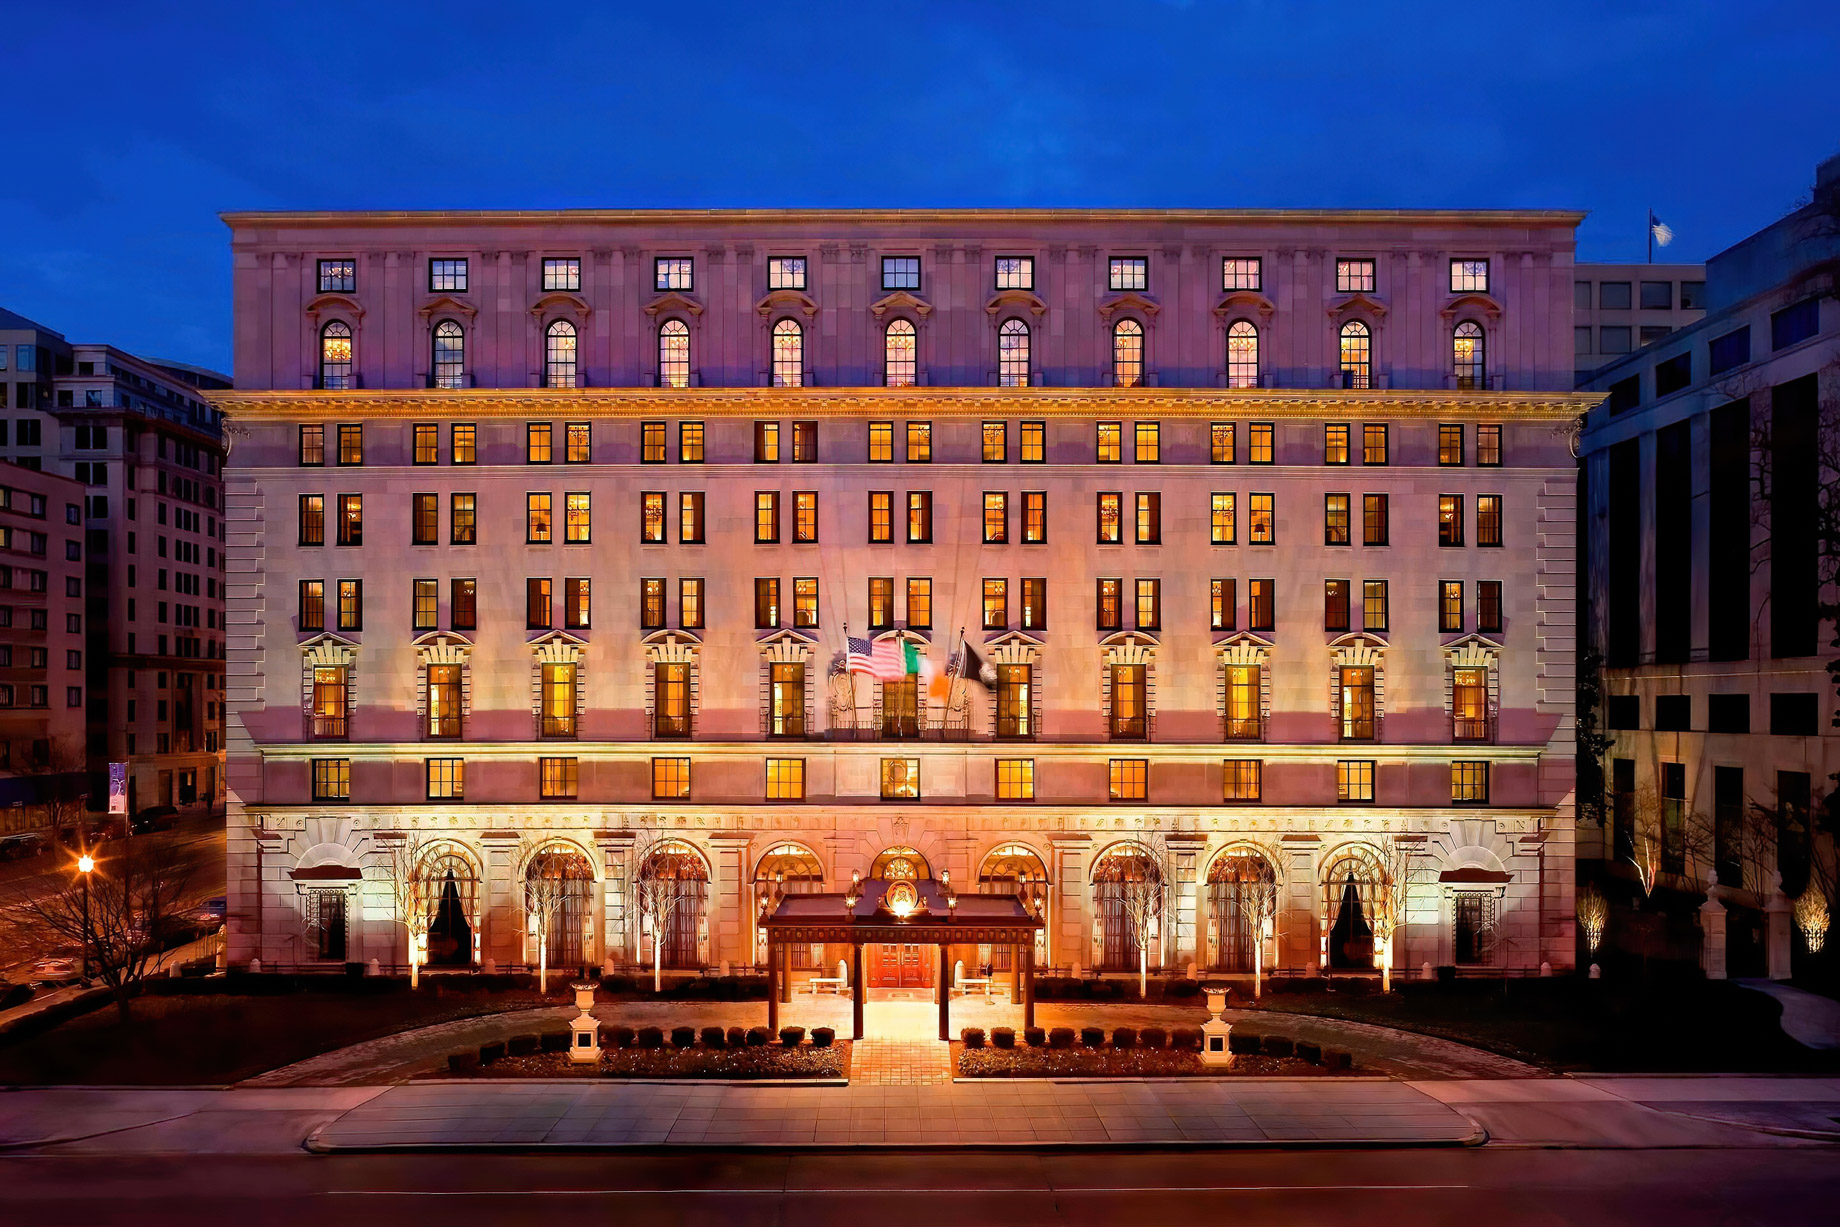 The St. Regis Washington D.C. Luxury Hotel - Washington, DC, USA